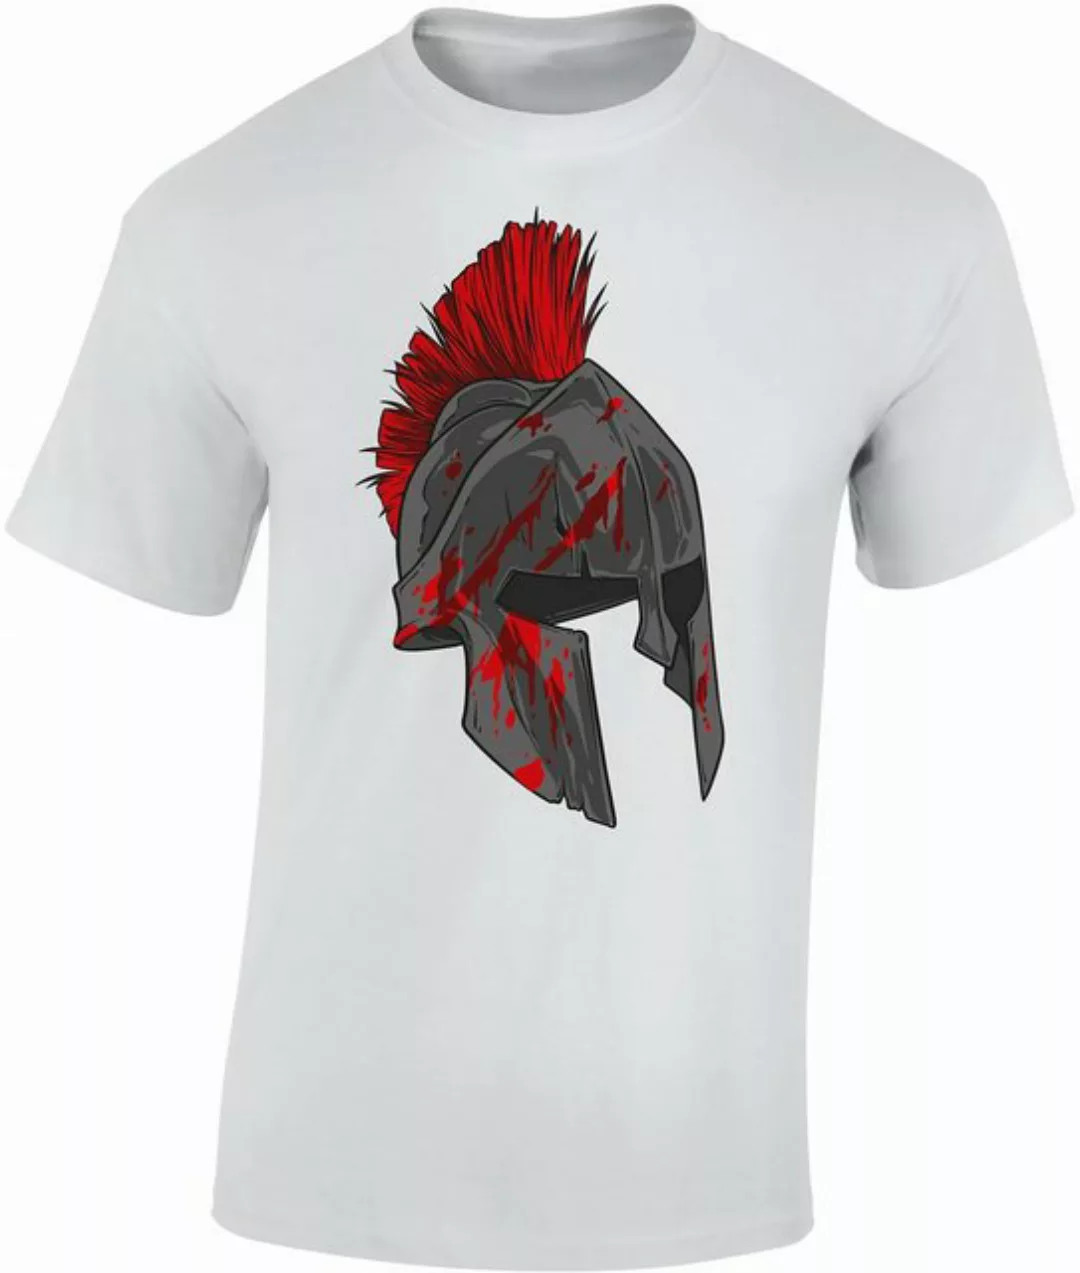 Baddery Print-Shirt Sparta T-Shirt : Spartan Warrior - Gym Sport Fitness, h günstig online kaufen